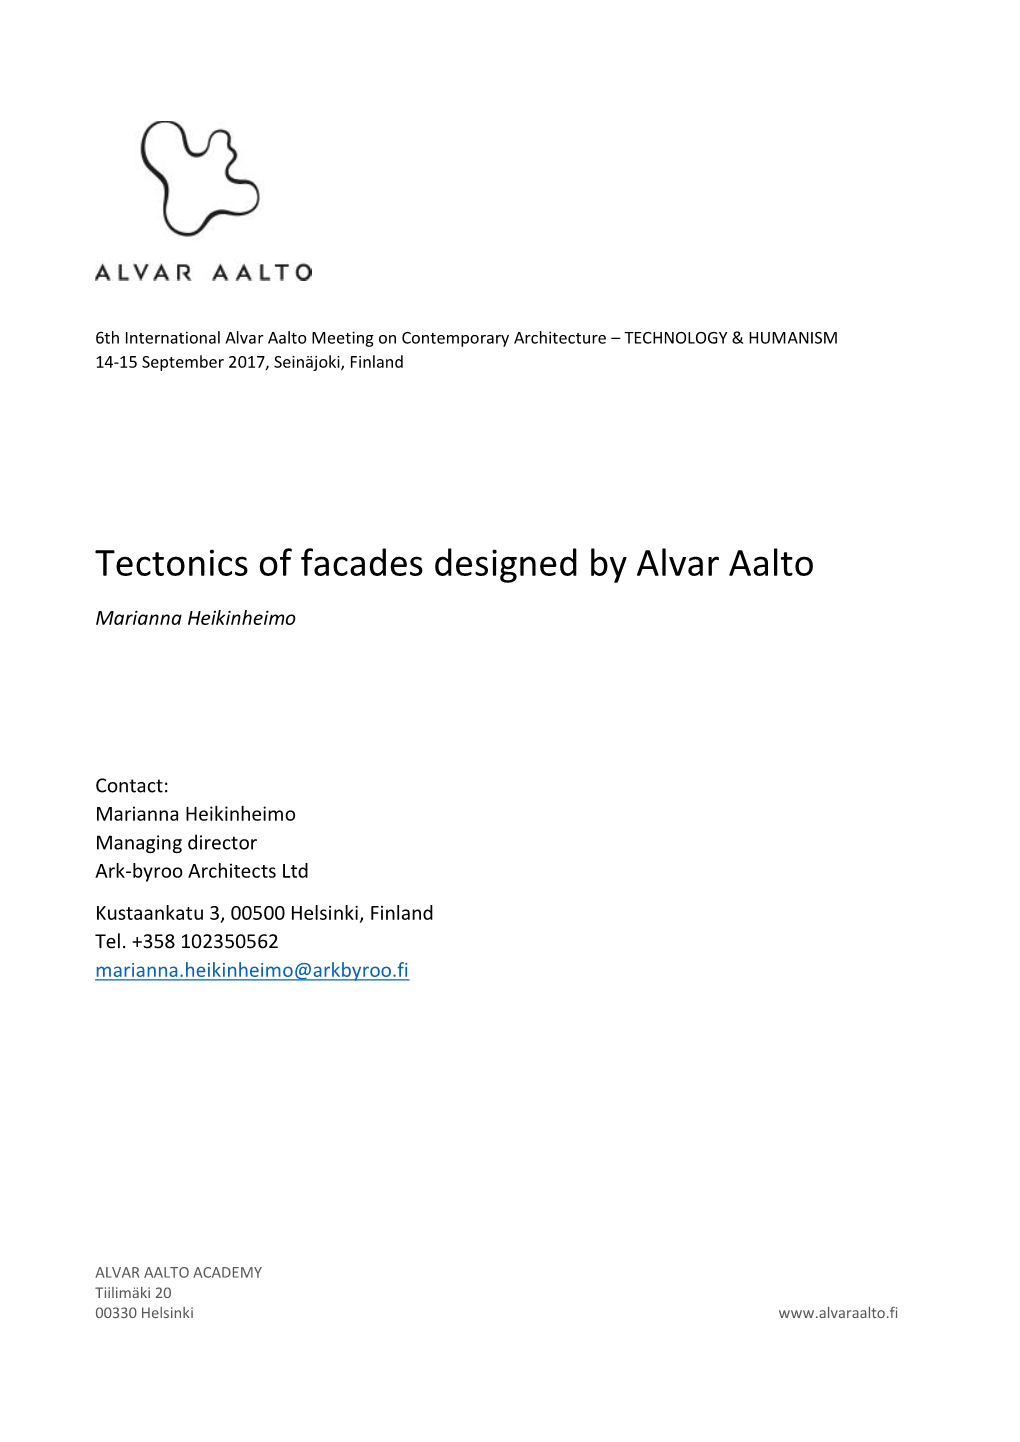 Tectonics of Facades Designed by Alvar Aalto